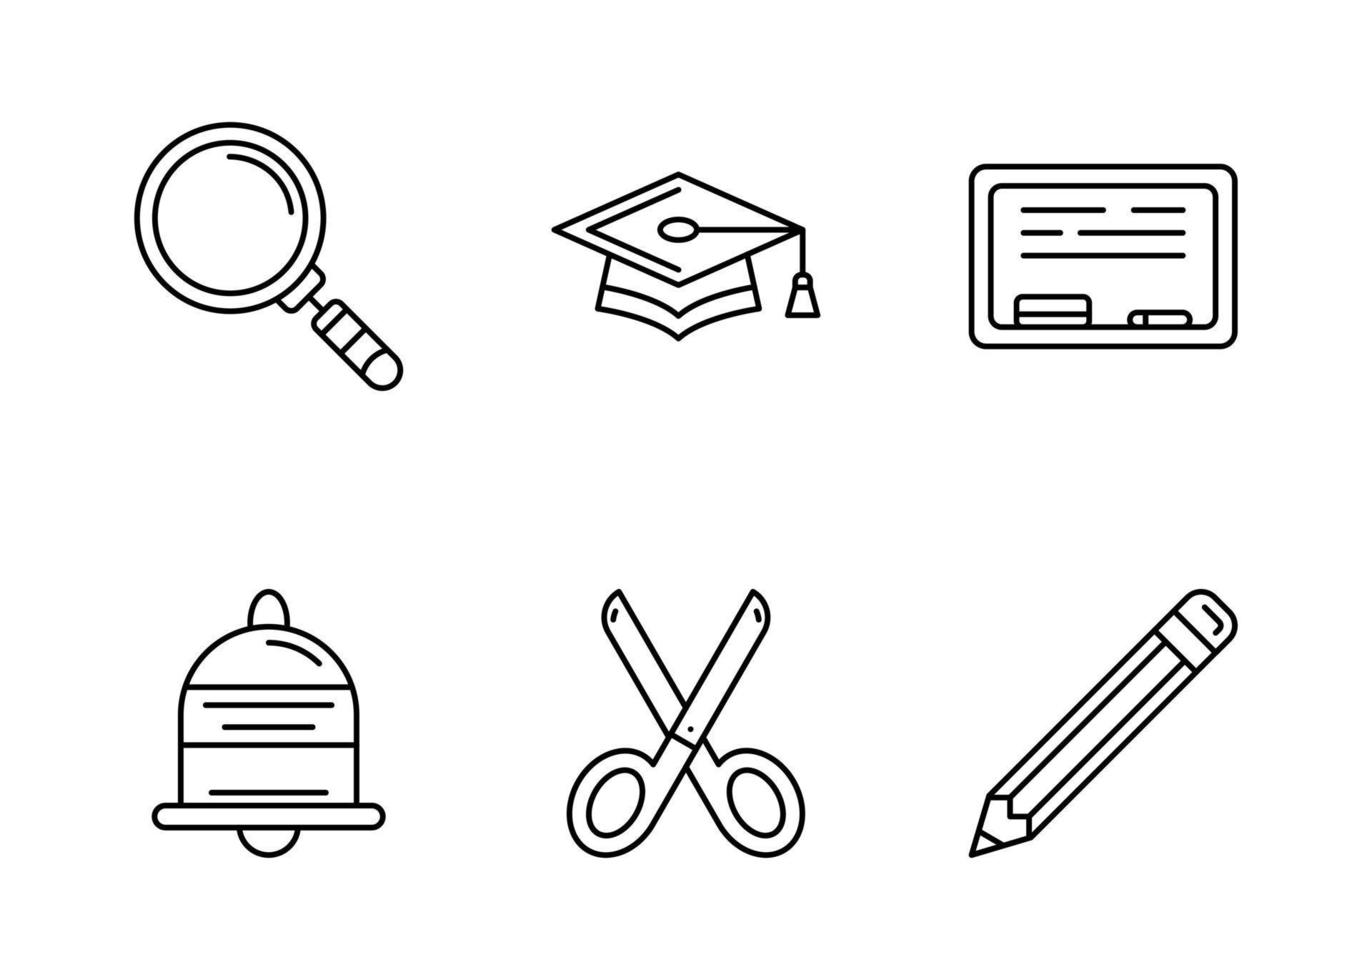 conjunto de iconos de vector de educación